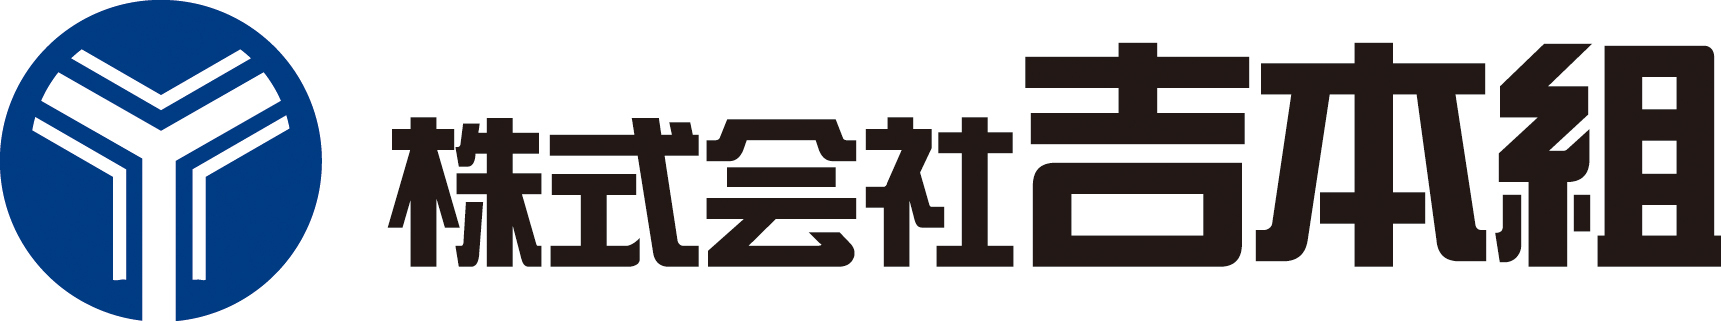 ロゴマーク横文字(吉本組).jpg